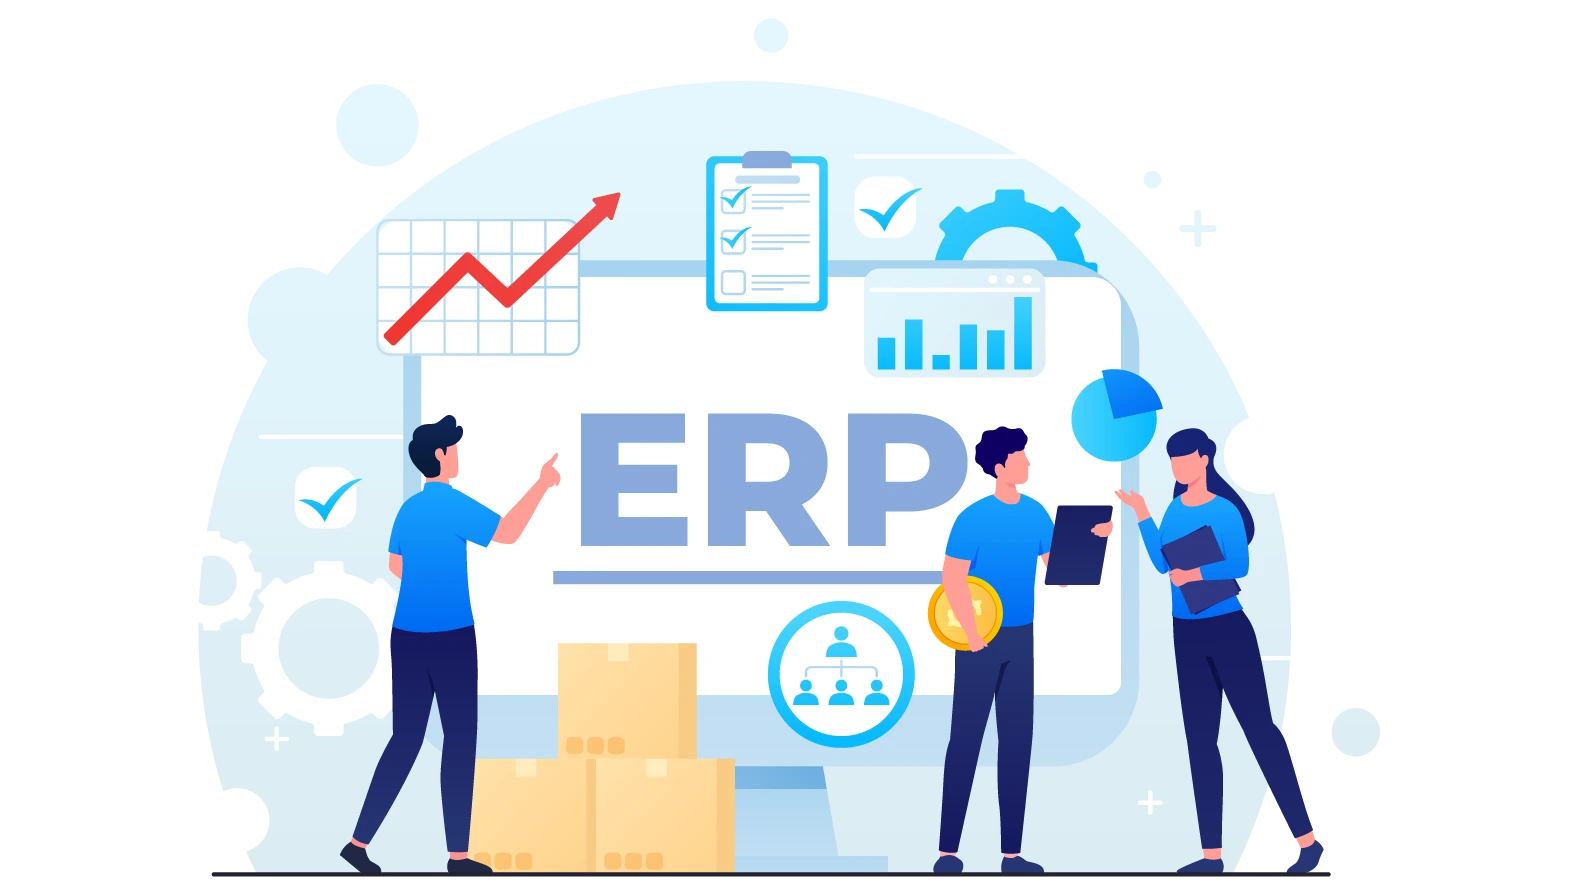 Enterprise resource & process management